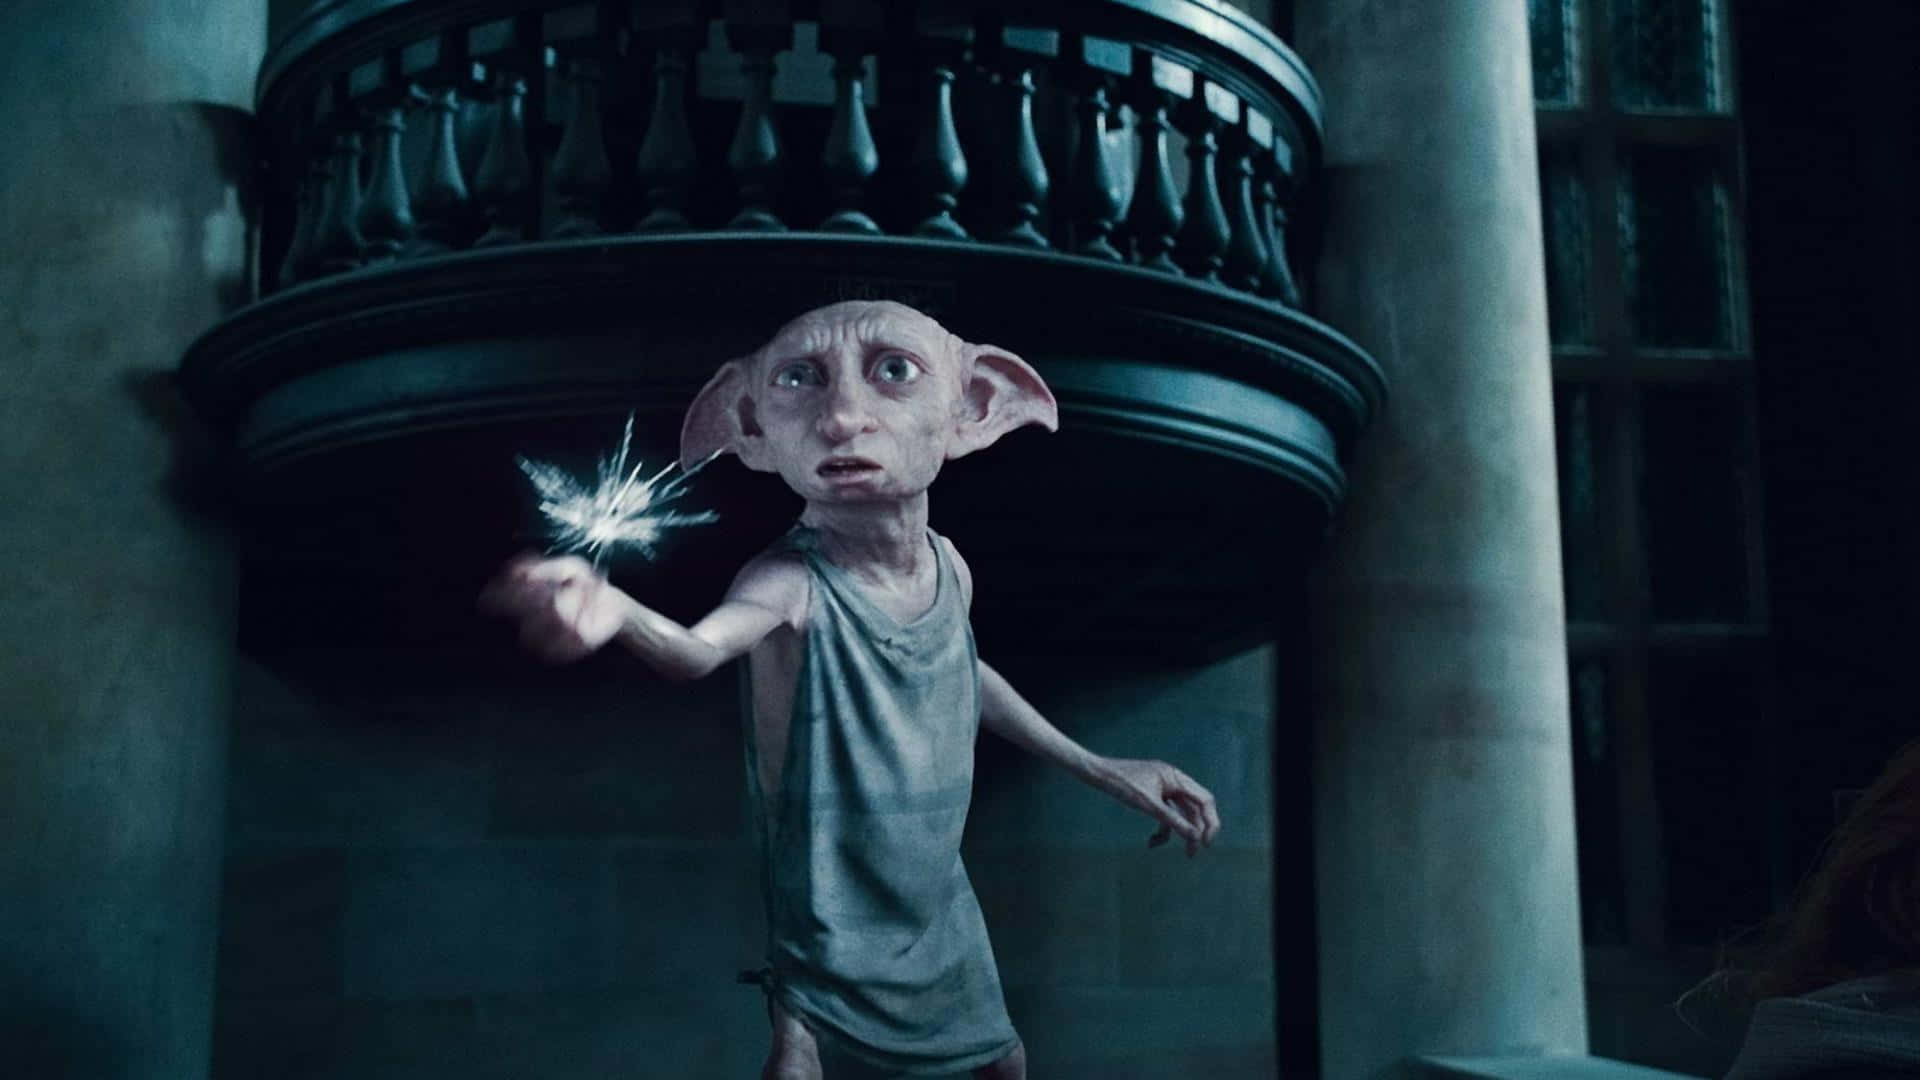 Dobby husalf glæder sig fejende sammen med Harry Potter i et magisk trollmandverden. Wallpaper